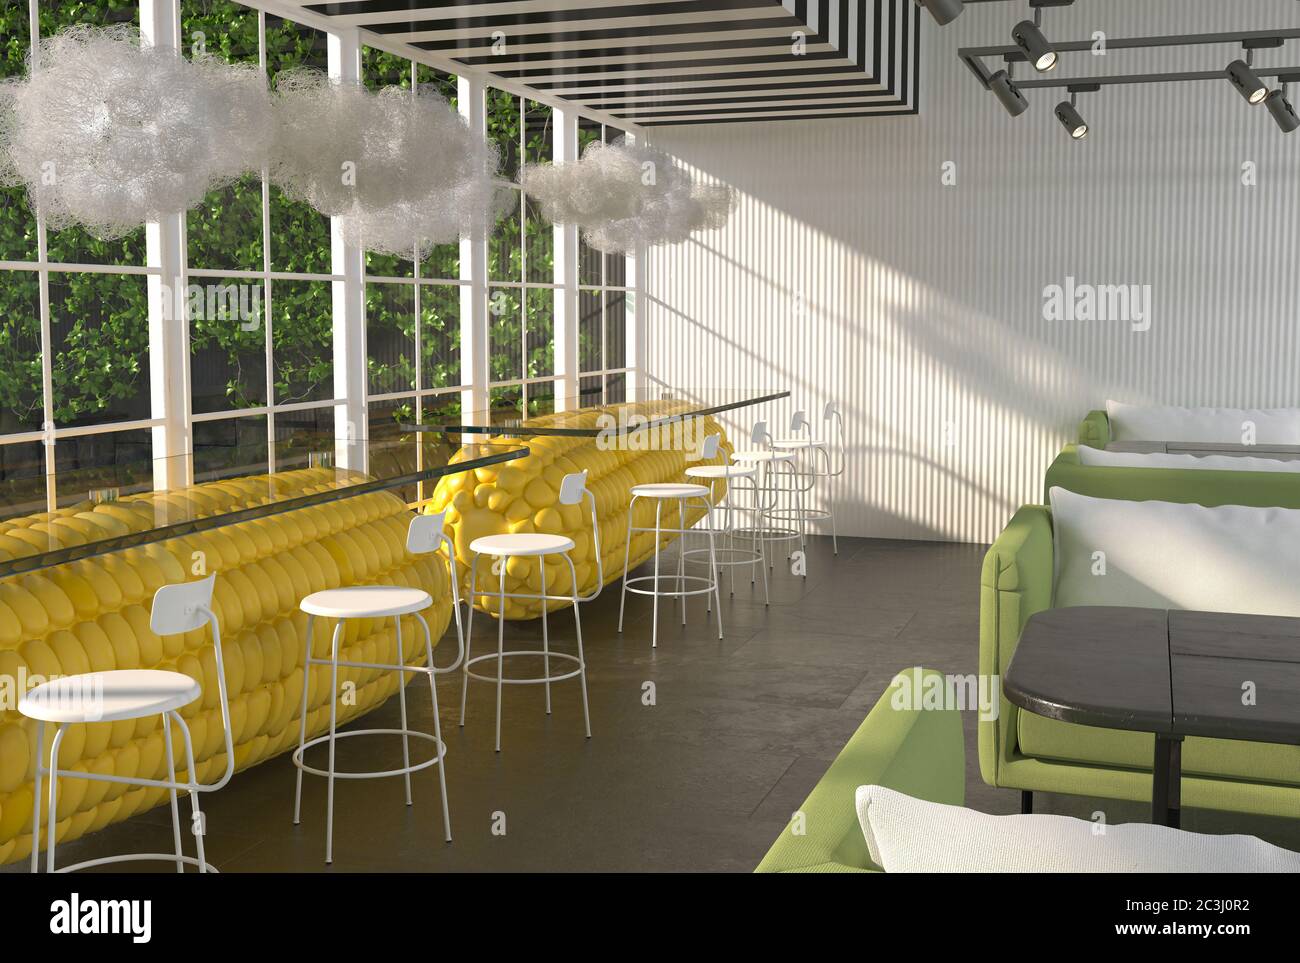 Das Innere des Restaurantsaals mit riesigen Maiskolben statt Tischen. Moderne kreative unerwartete Inneneinrichtung. 3D-Rendering Stockfoto